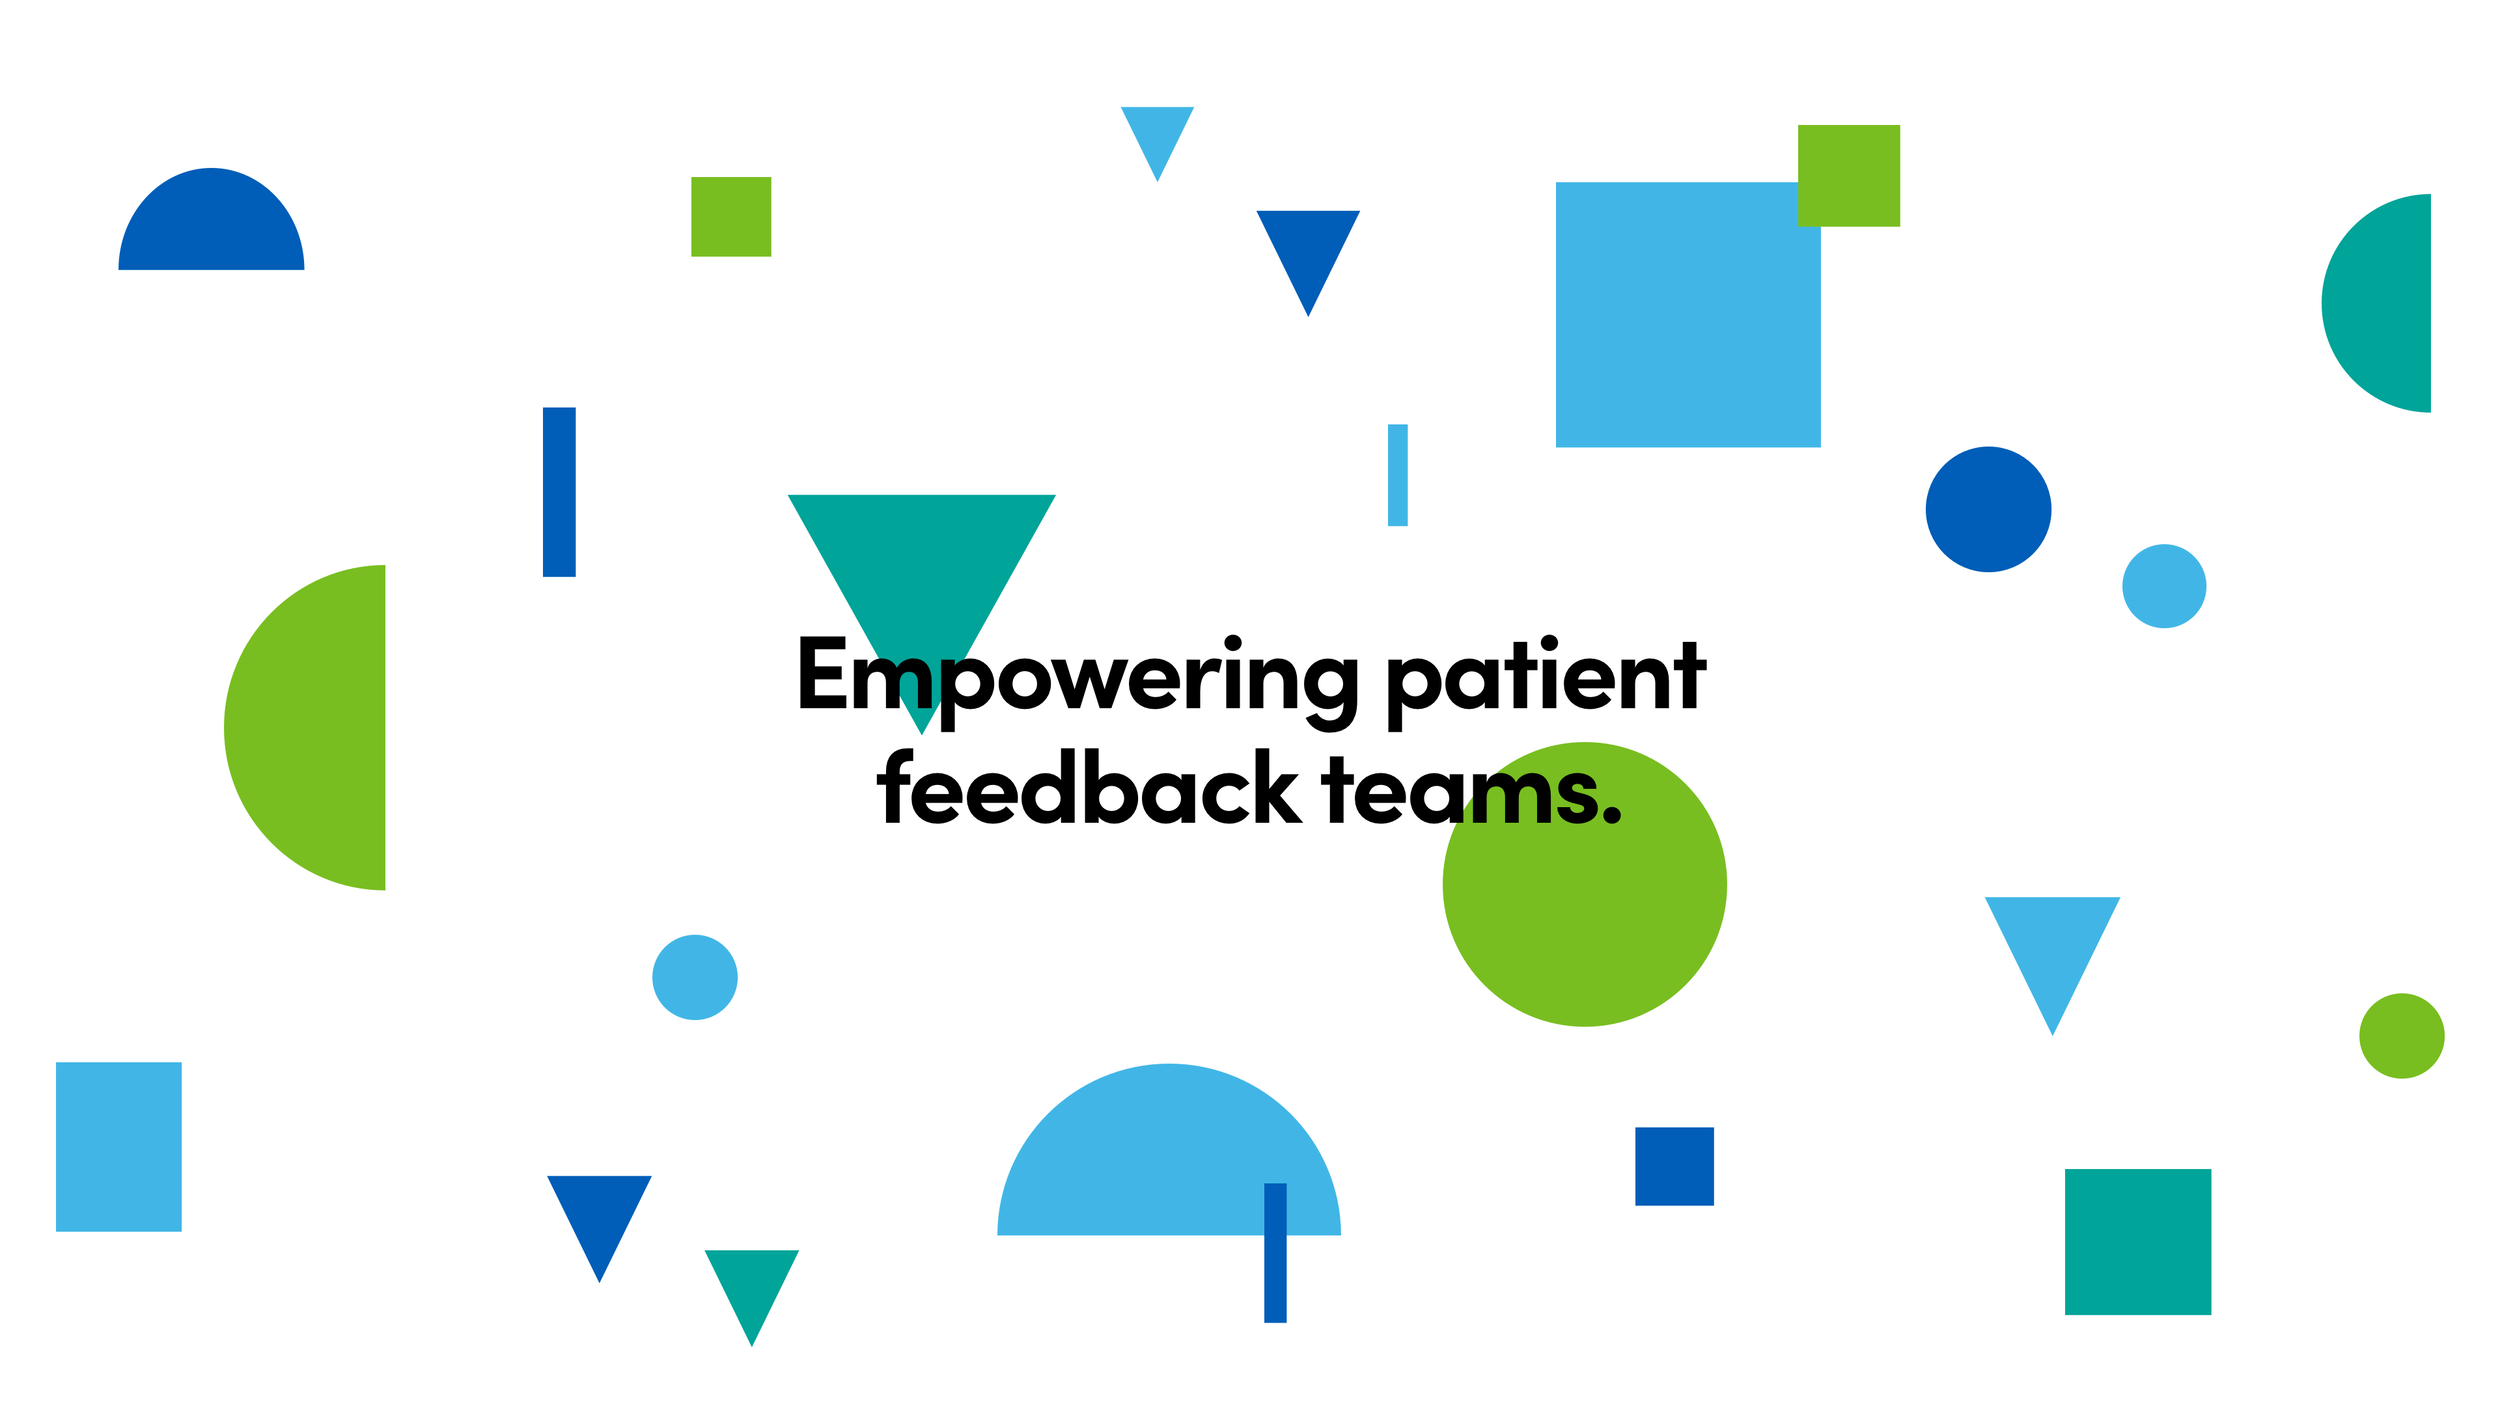 FEEDBACK] Hospital Logo - Creations Feedback - Developer Forum